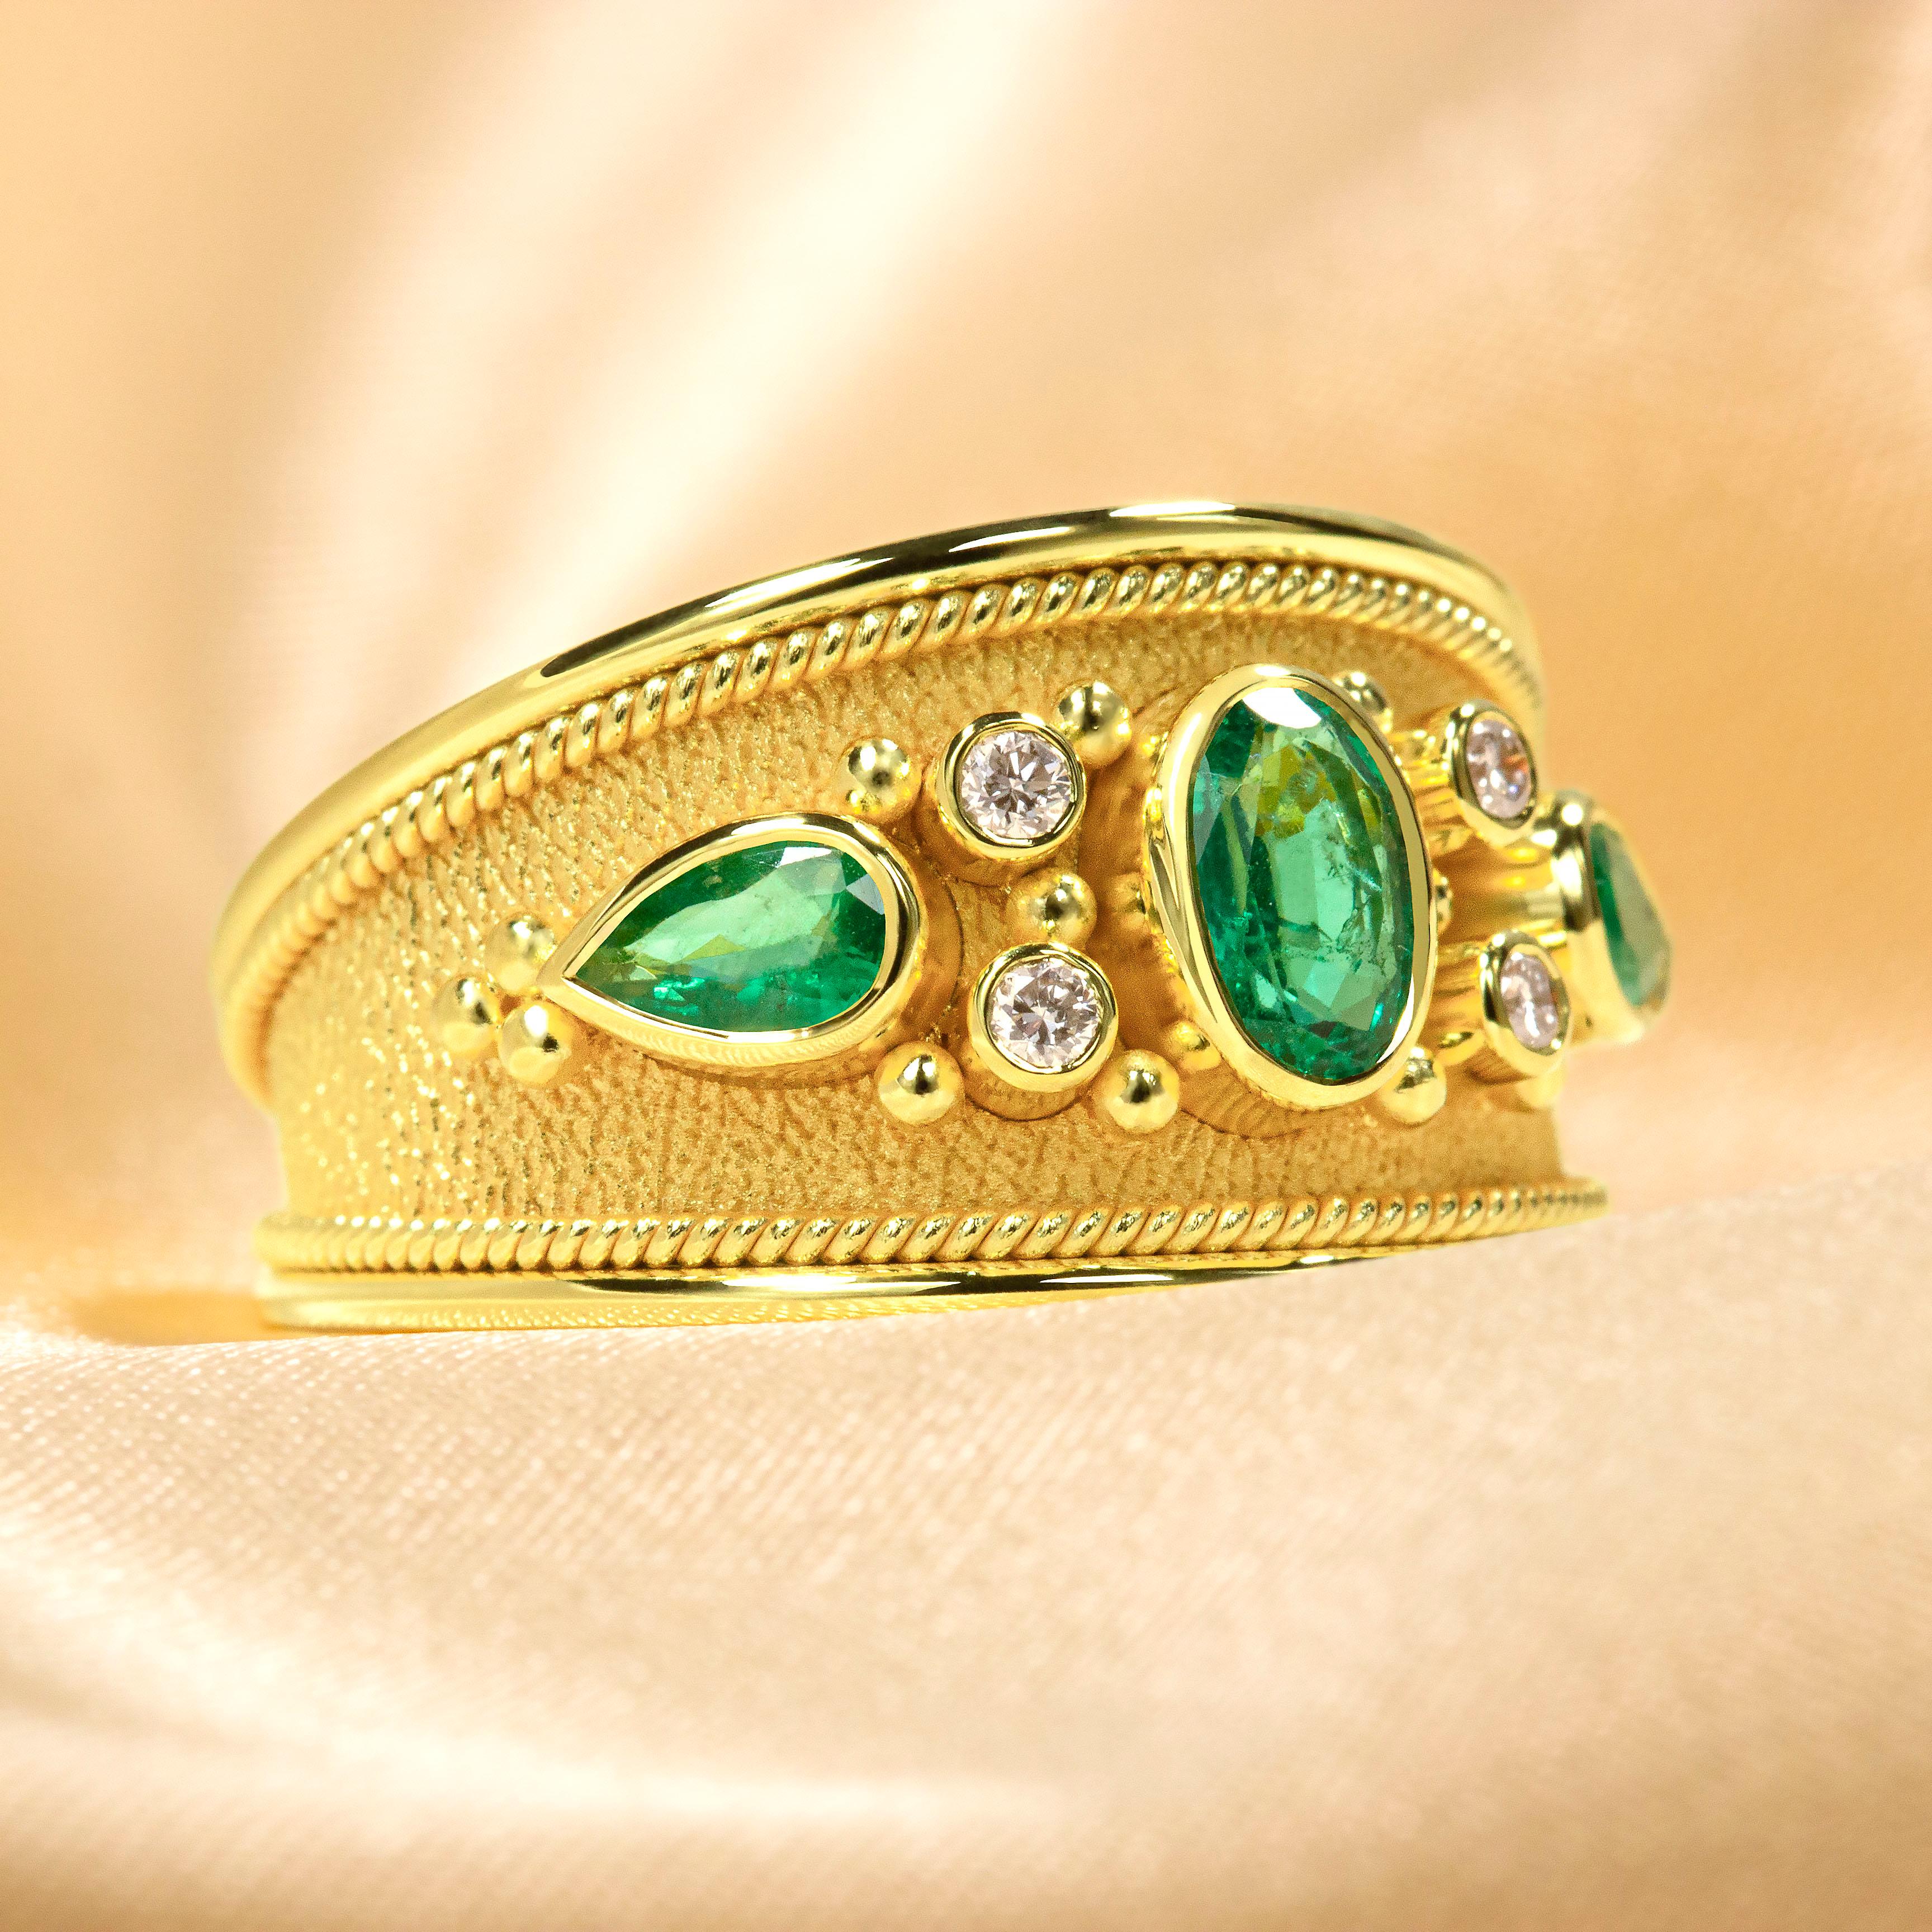 Faites une entrée inoubliable avec cette éblouissante bague d'émeraude en or, incrustée de diamants éblouissants et digne de la royauté ! C'est le choix parfait pour ajouter un style extravagant et une touche d'éclat à votre garde-robe et faire une